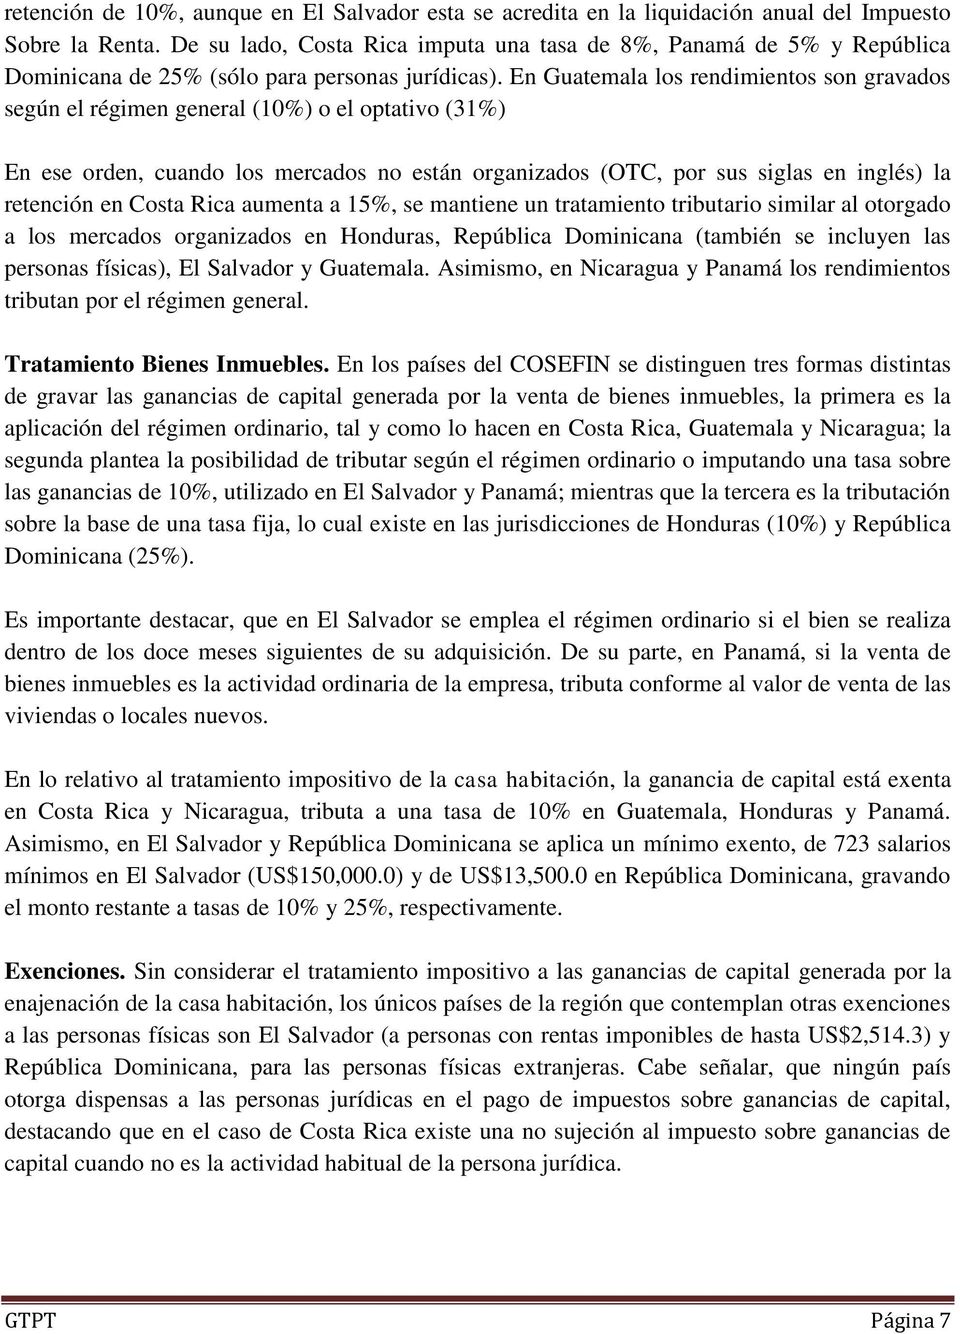 En Guatemala los rendimientos son gravados según el régimen general (10%) o el optativo (31%) En ese orden, cuando los mercados no están organizados (OTC, por sus siglas en inglés) la retención en